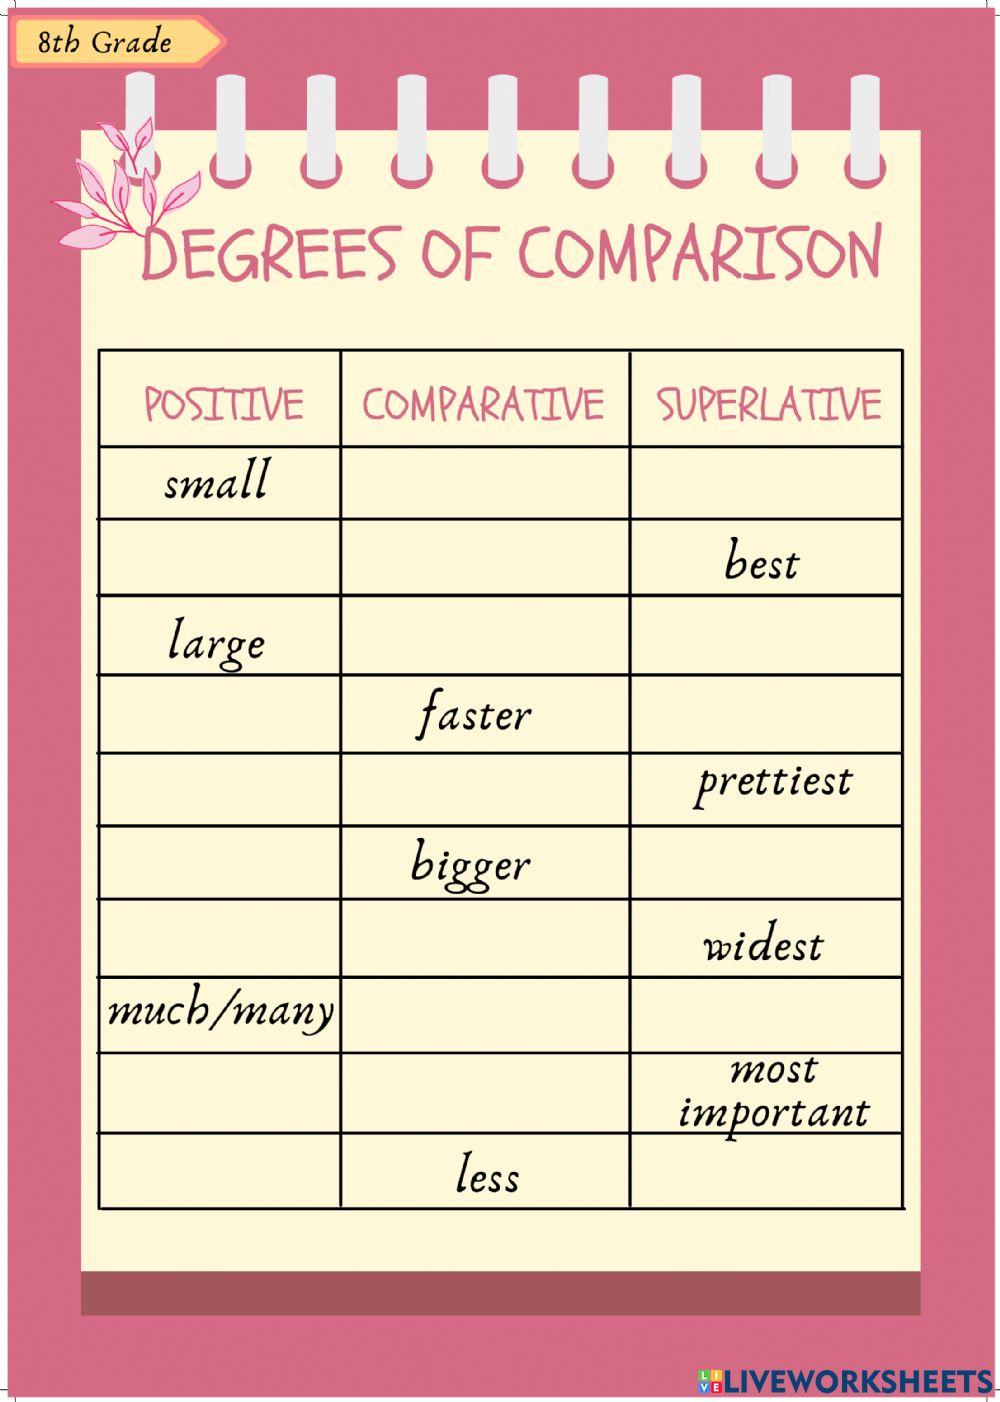 8th Degrees of Comparison